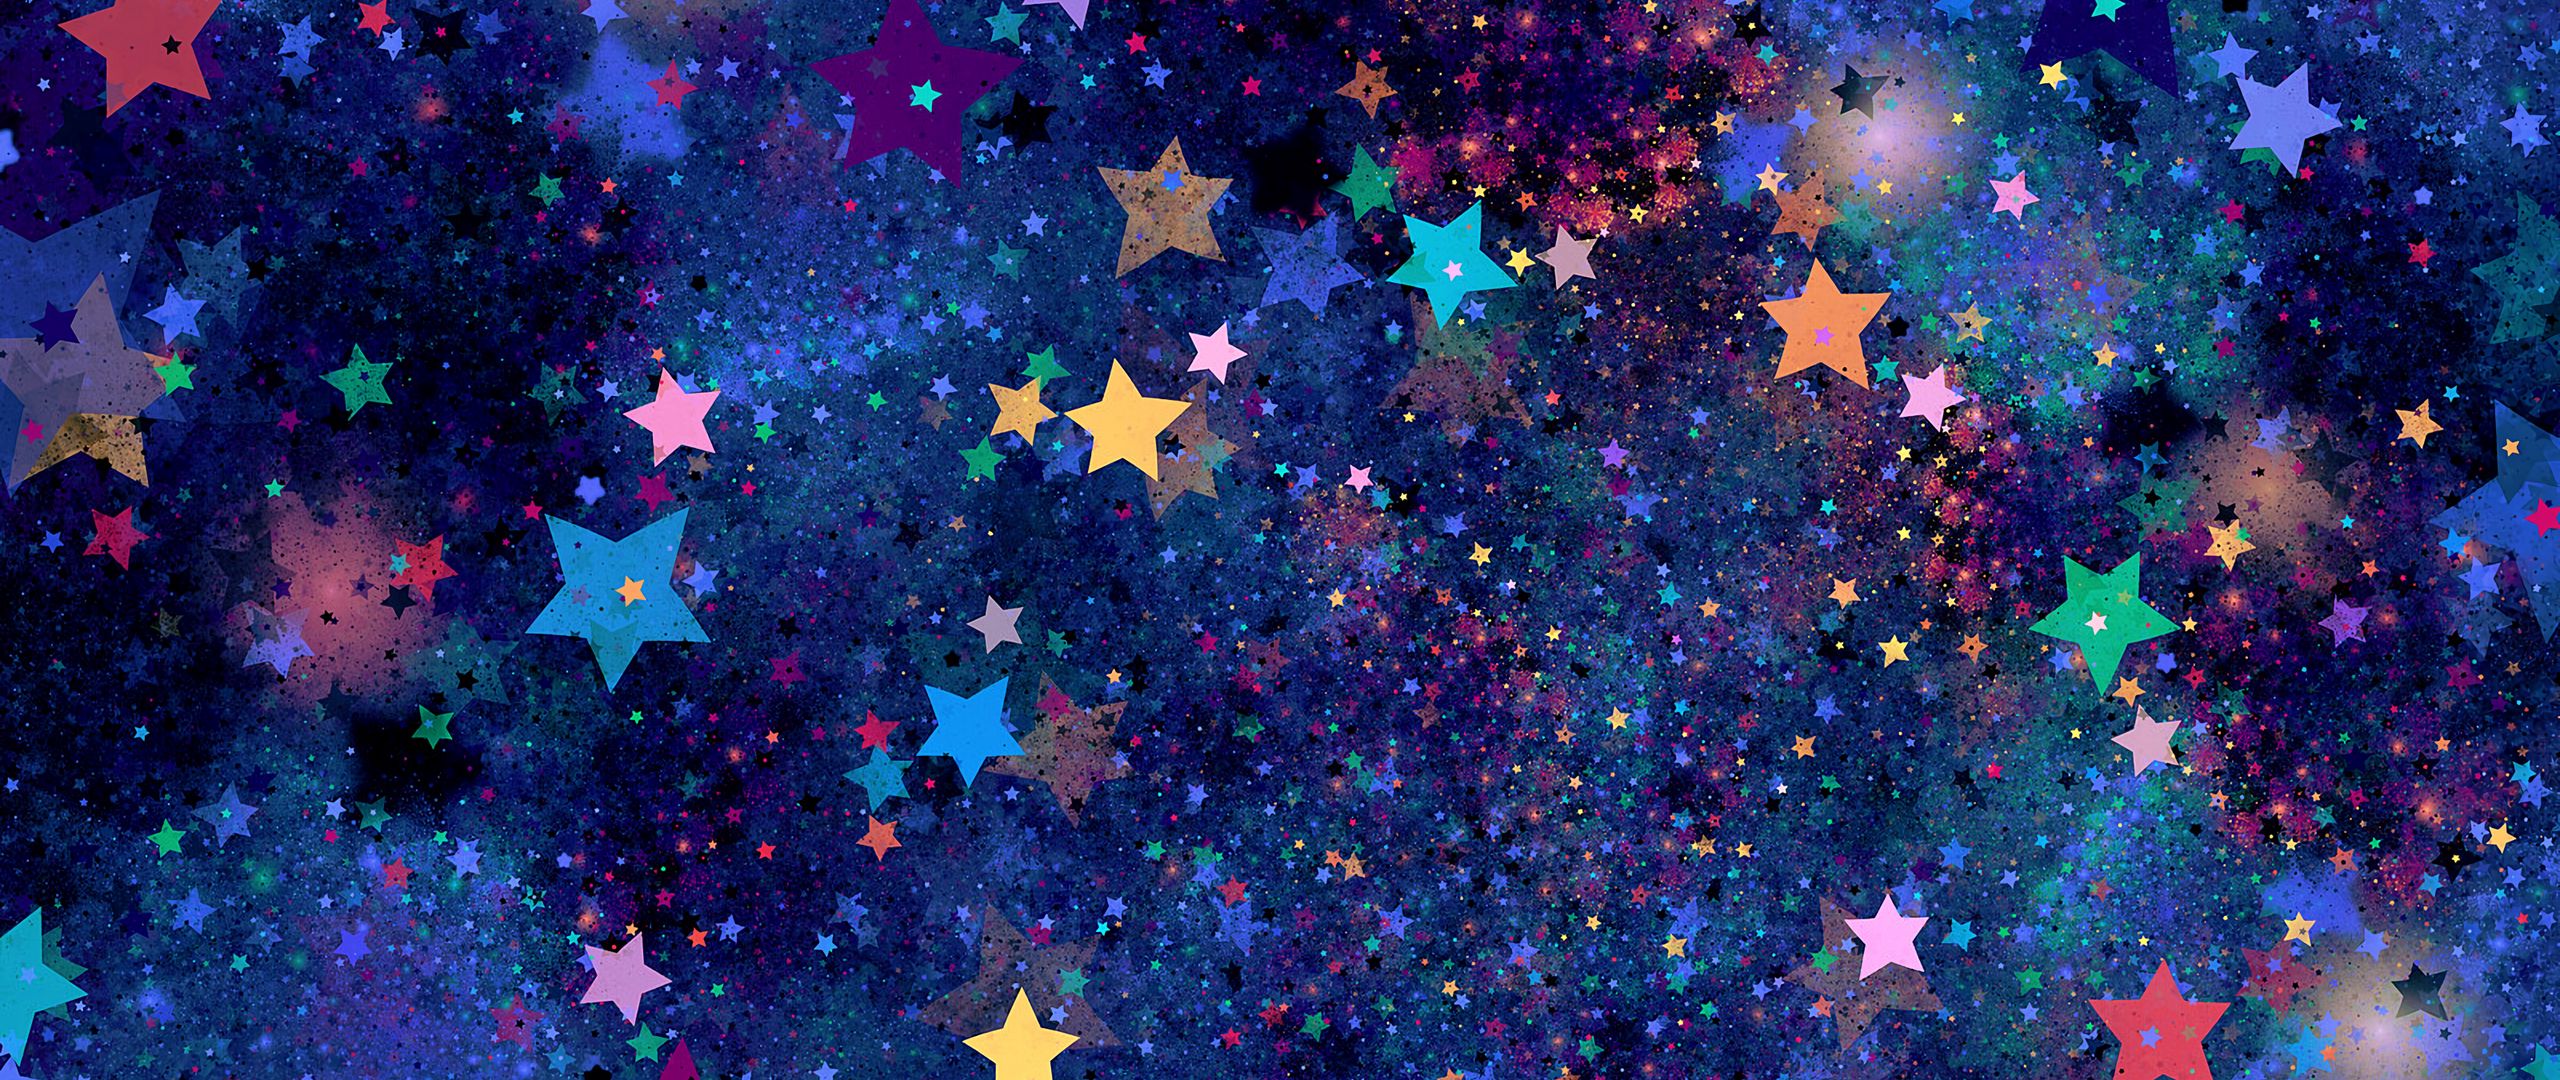 Звезды вк видео 1 выпуск. Обложка для ВК звезды. Обложка для ВК профиля звезды. Текстуры звезды фото. Звезды из ВК.